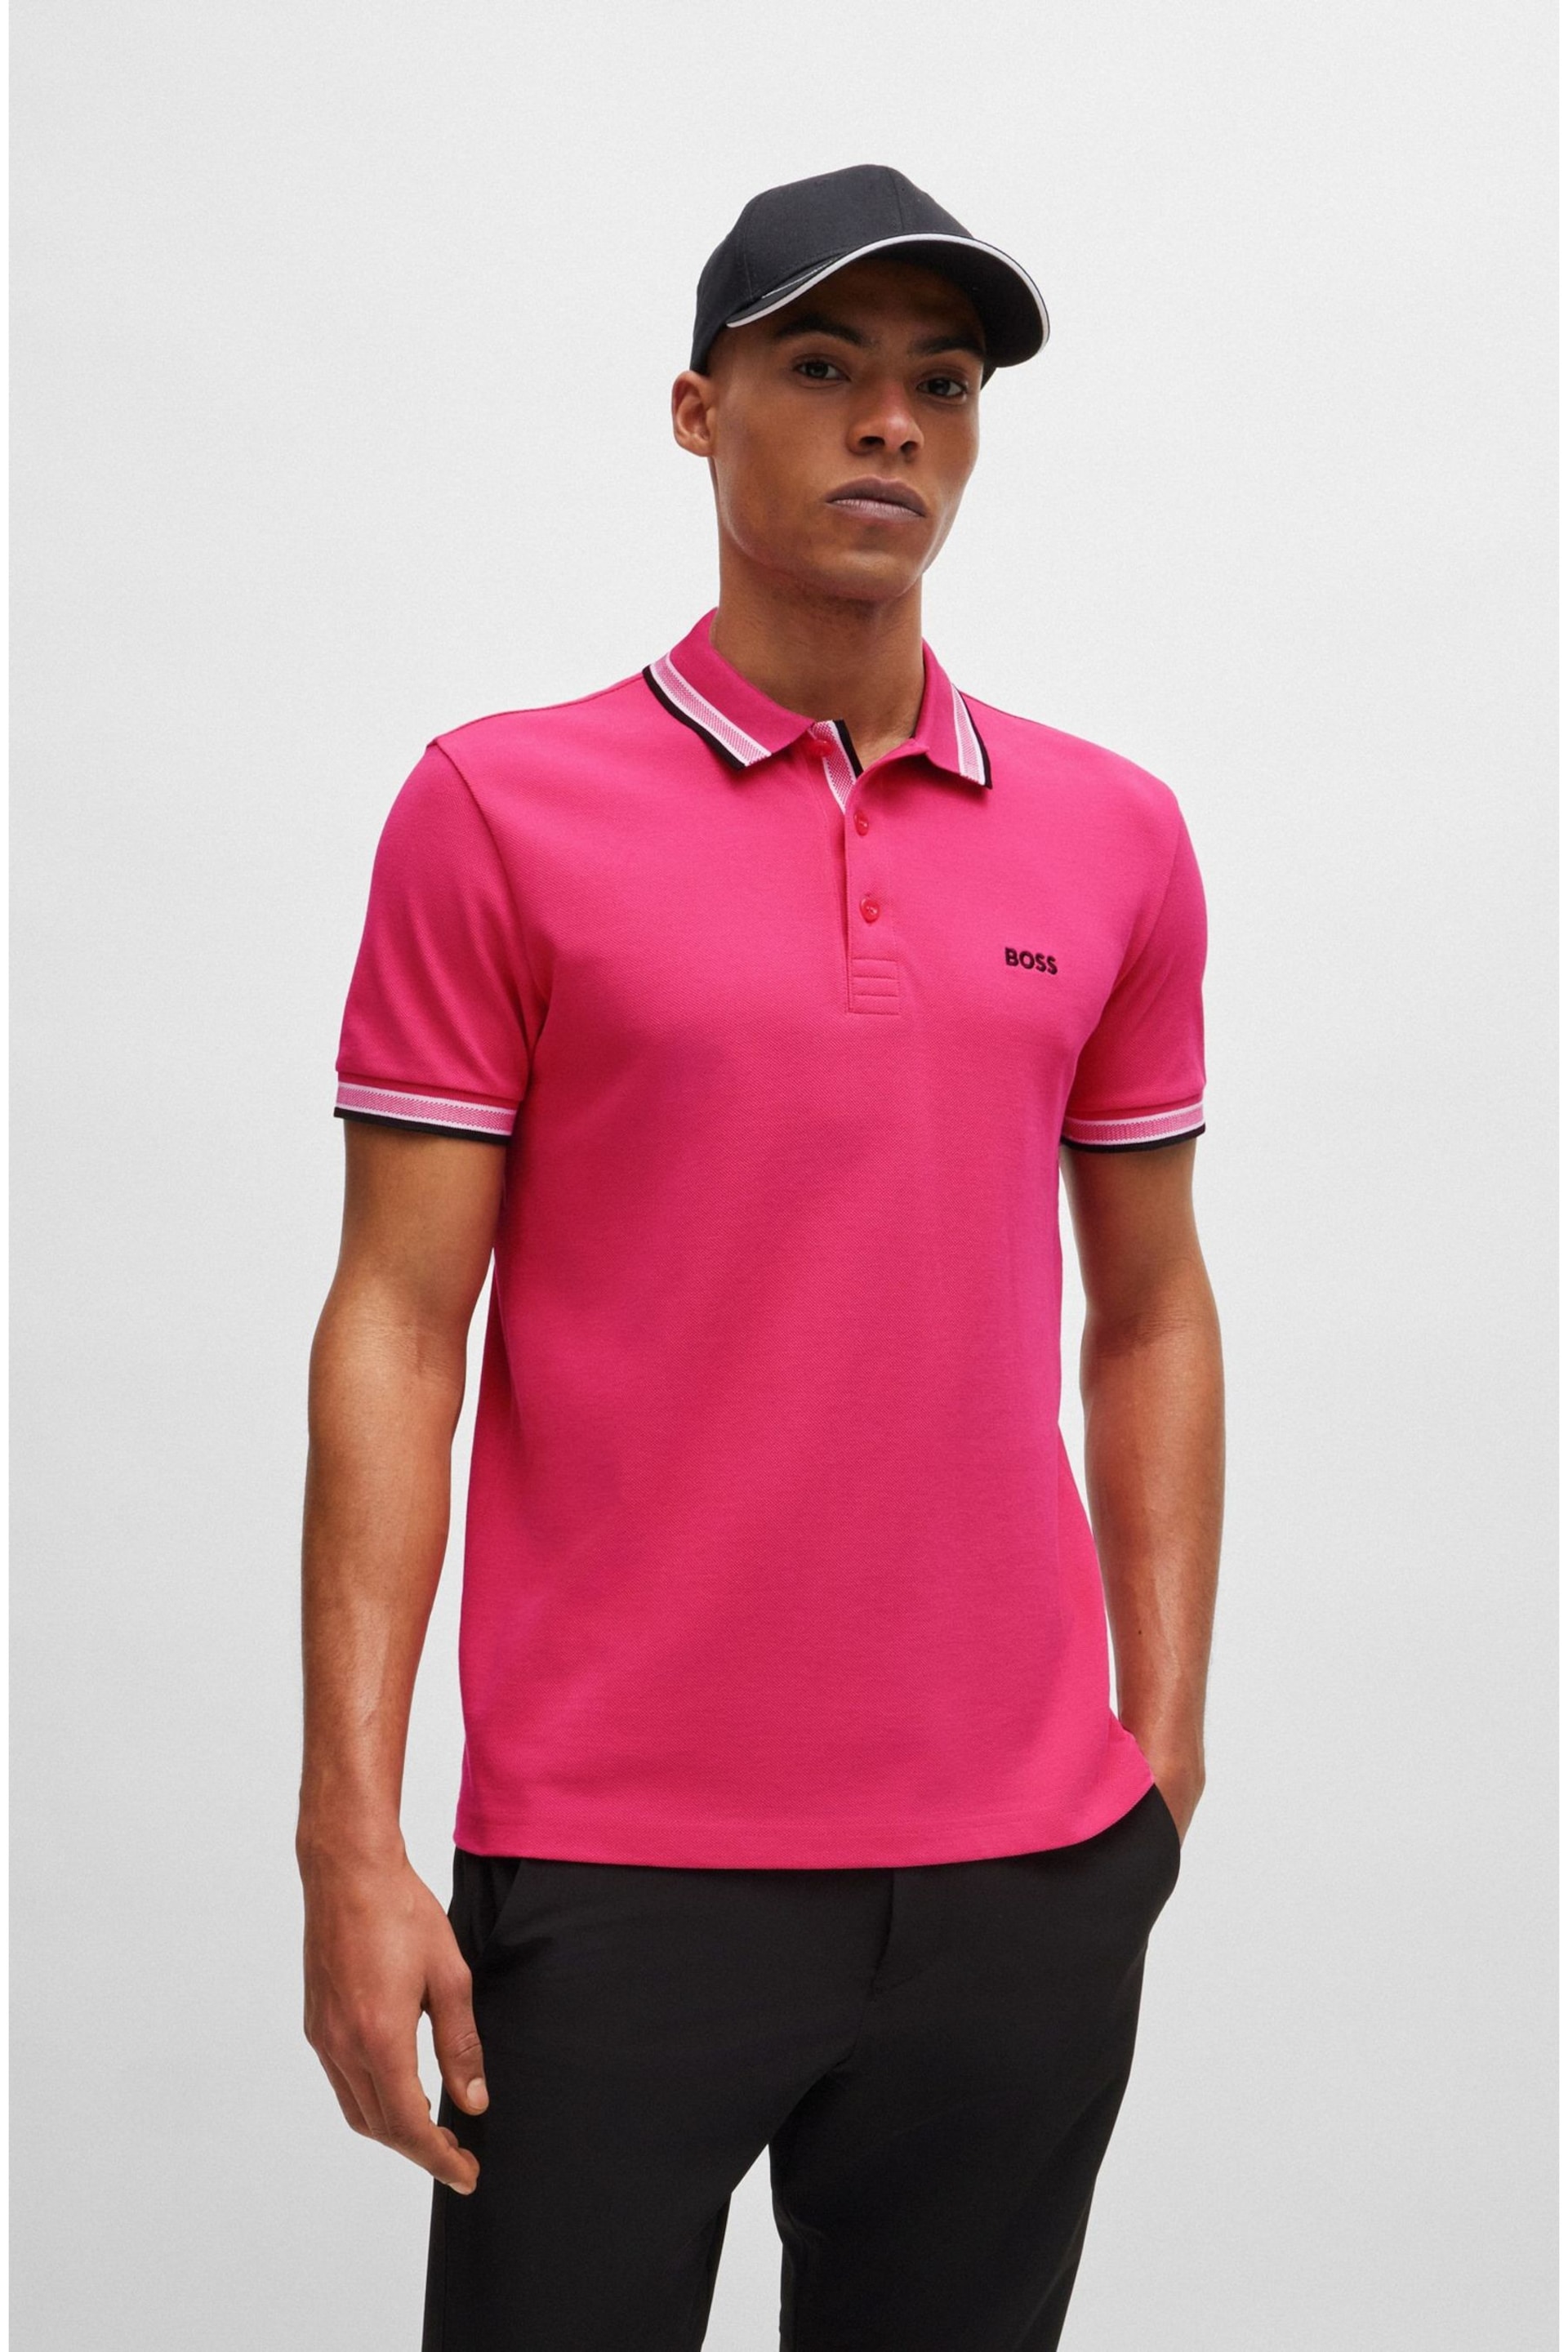 BOSS Light Pink Paddy Polo Pink Cream Shirt - Image 3 of 5